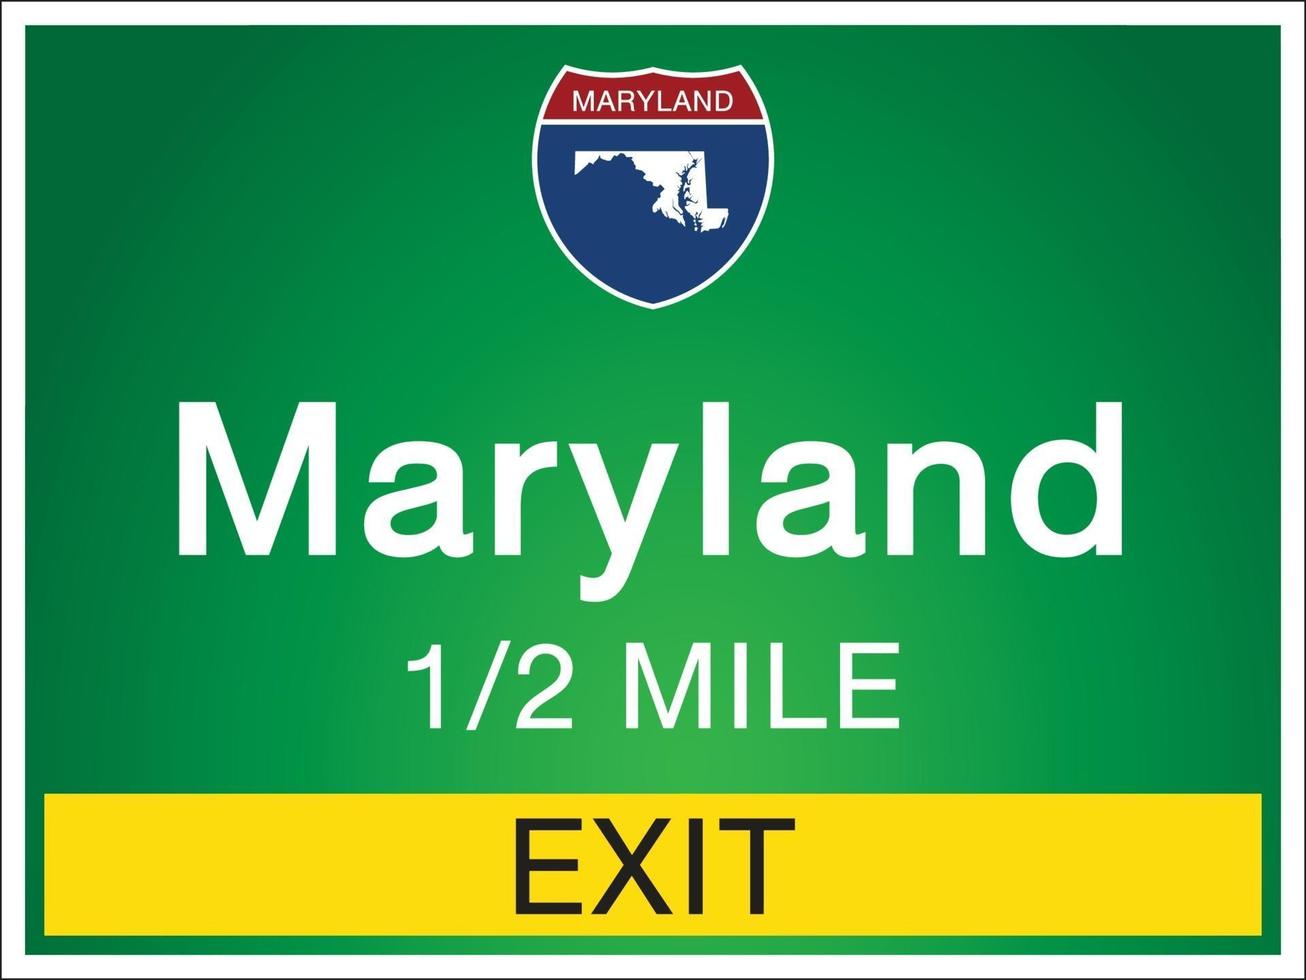 Señalización en la autopista en información y mapas del estado de Maryland. vector